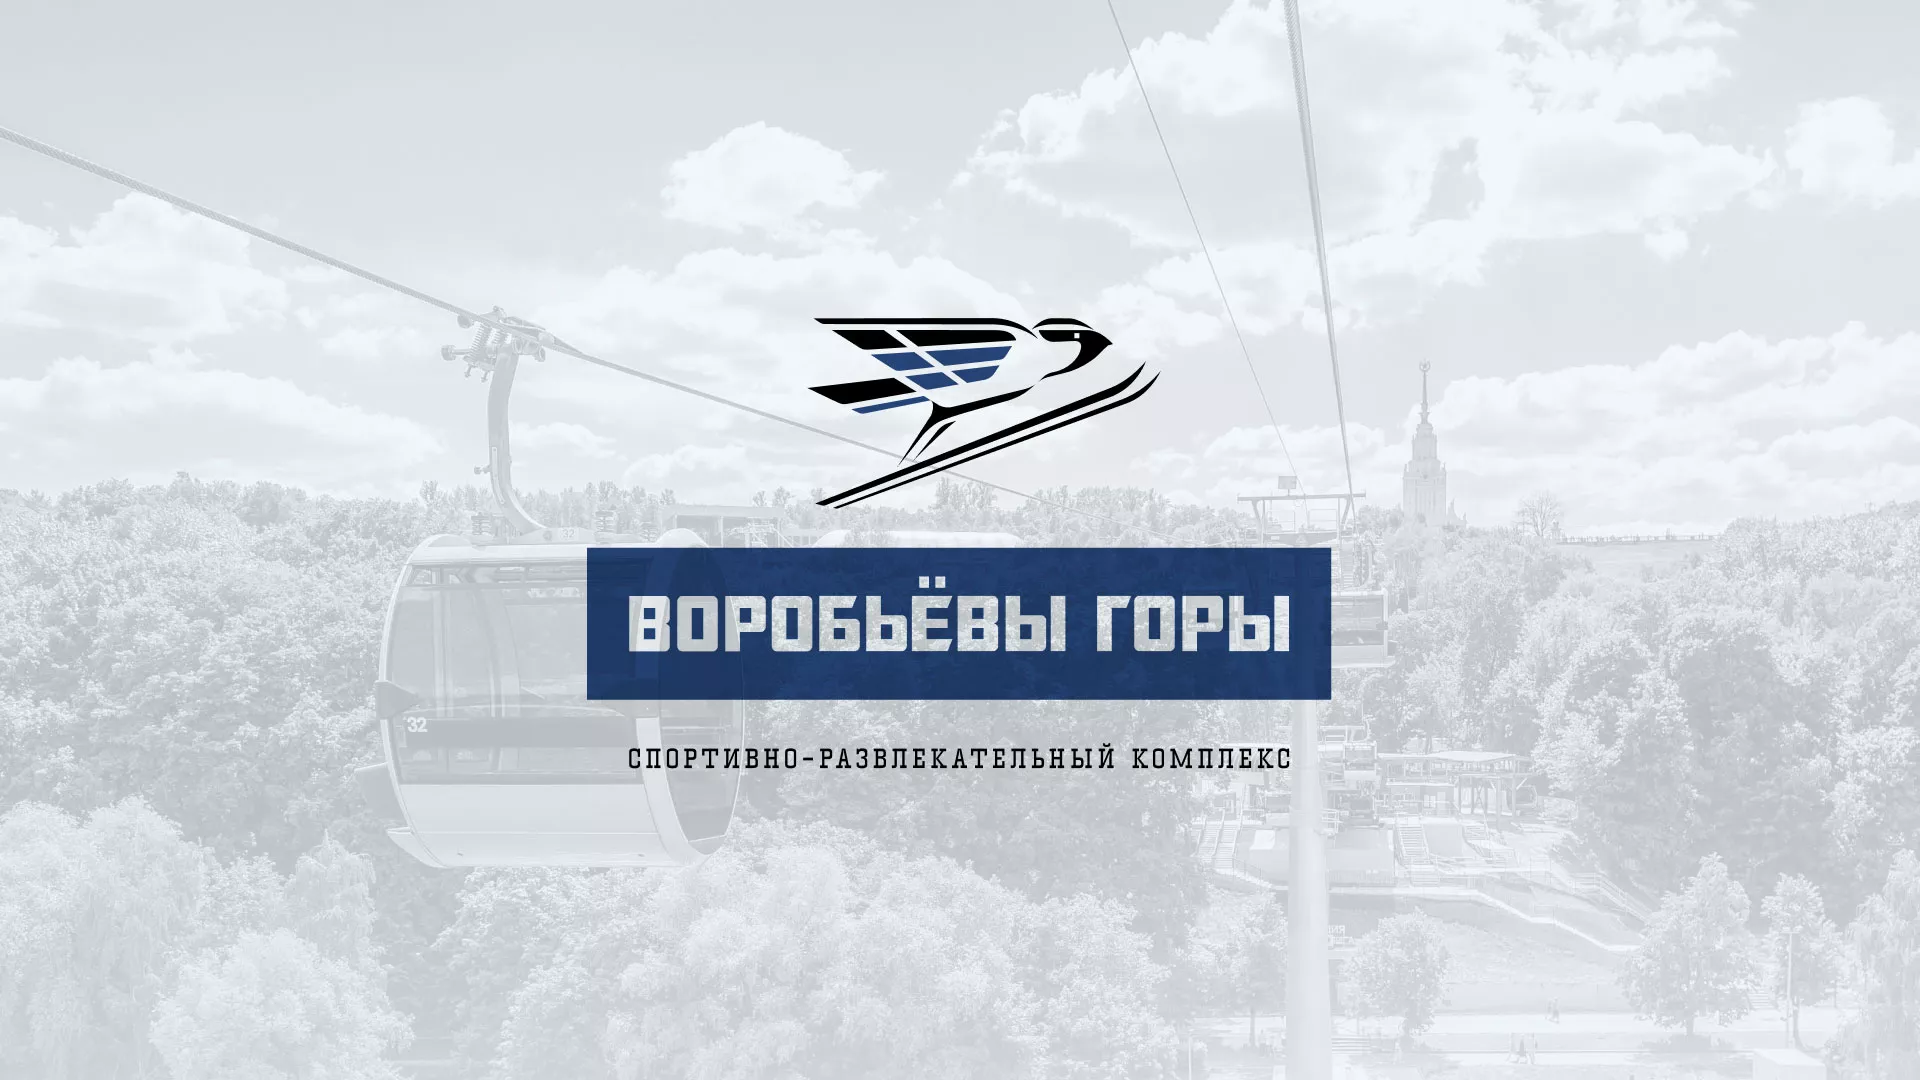 Разработка сайта в Усть-Илимске для спортивно-развлекательного комплекса «Воробьёвы горы»